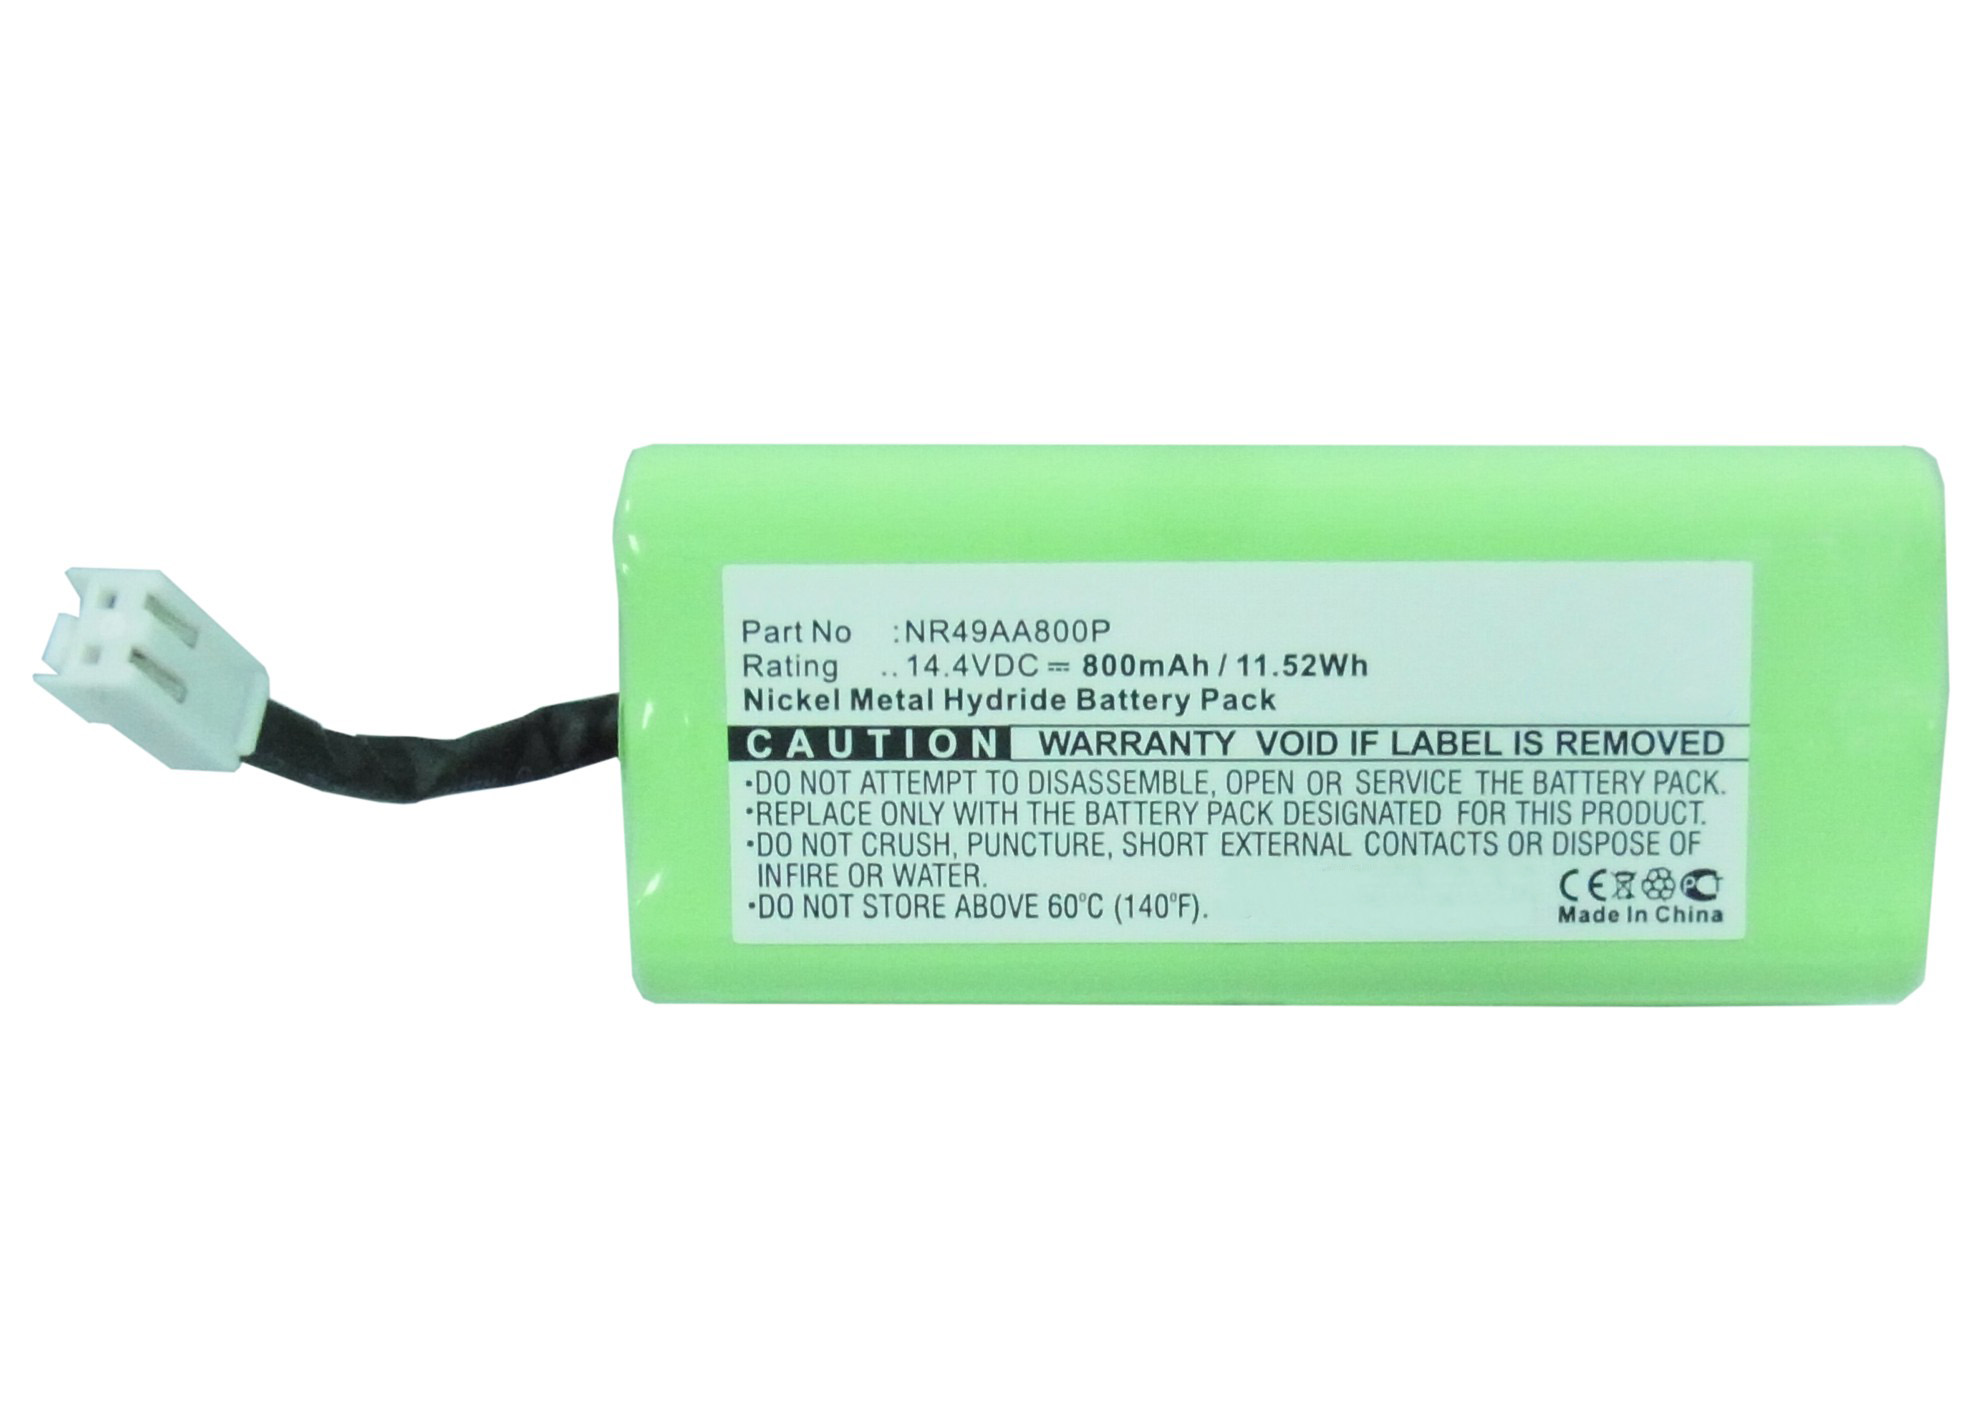 Batteries for PhilipsVacuum Cleaner